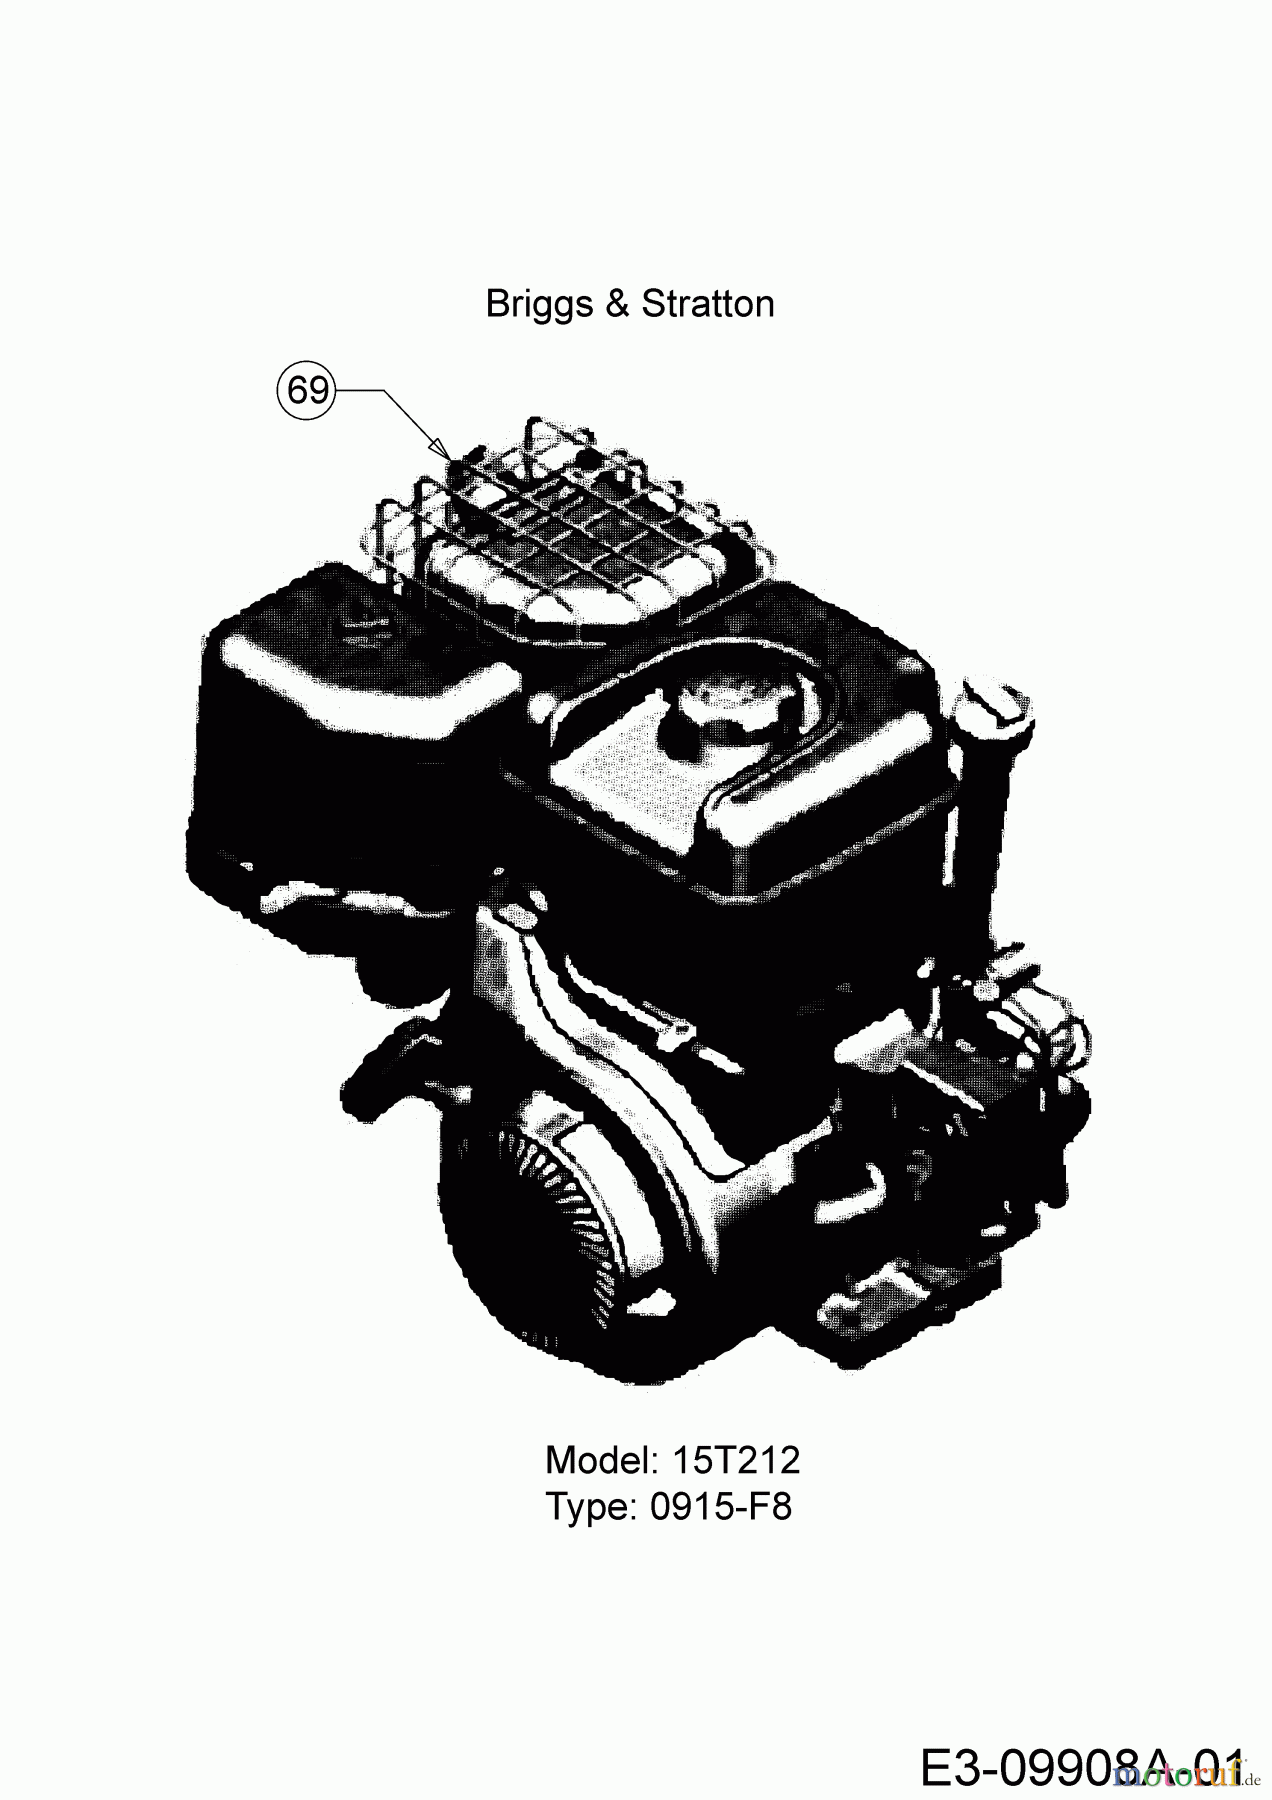  Troy-Bilt Häcksler CS 4325 24B-424M766  (2017) Motor Briggs & Stratton